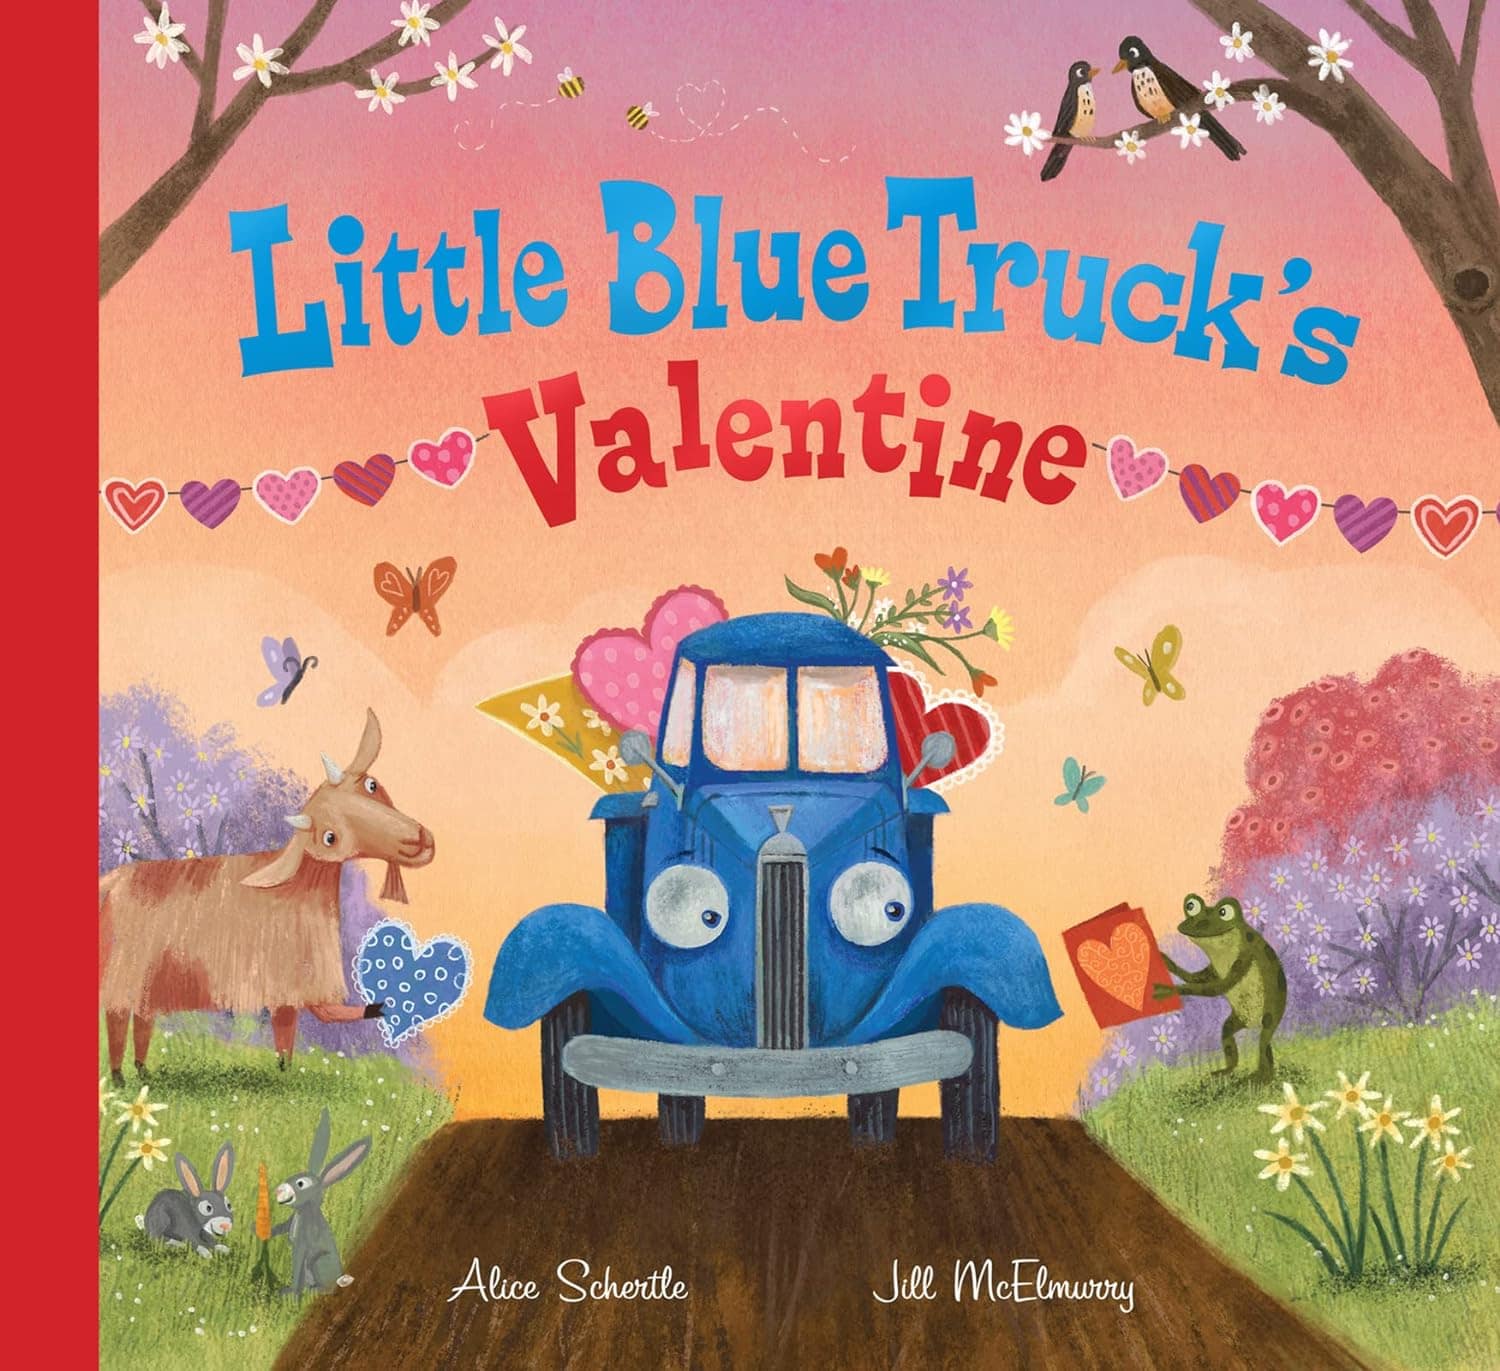 "Little Blue Truck's Valentine" by Alice Schertle